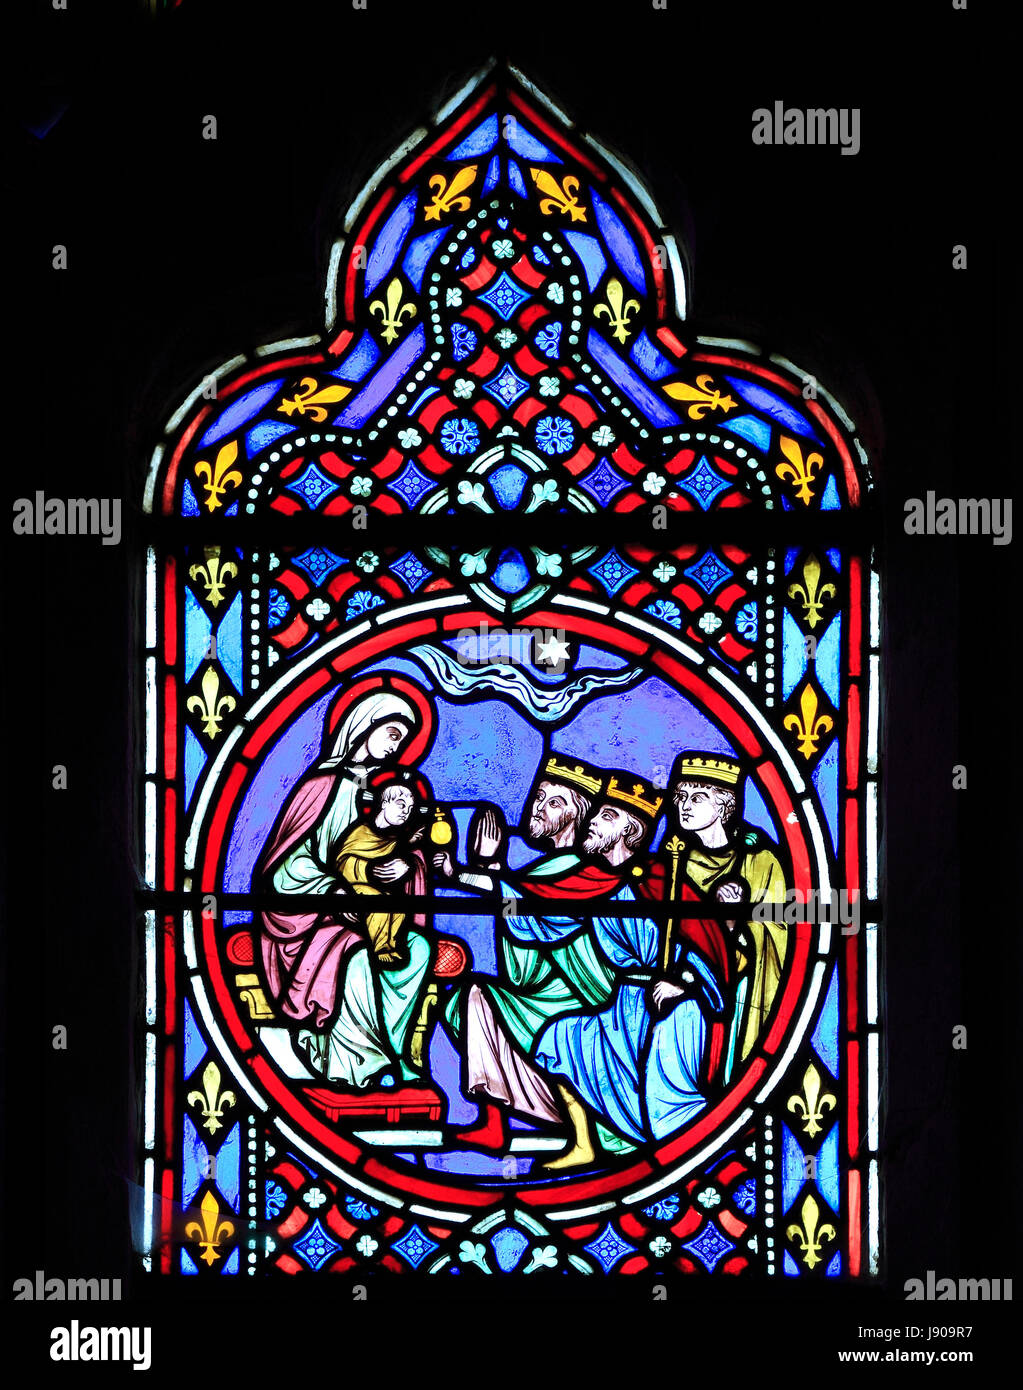 Ventana de la natividad, vidrieras de Oudinot de París, en 1861, la Iglesia Feltwell, Norfolk, la Epifanía, la visita de los Reyes Magos, 3 Reyes, al Niño Jesús y María Foto de stock